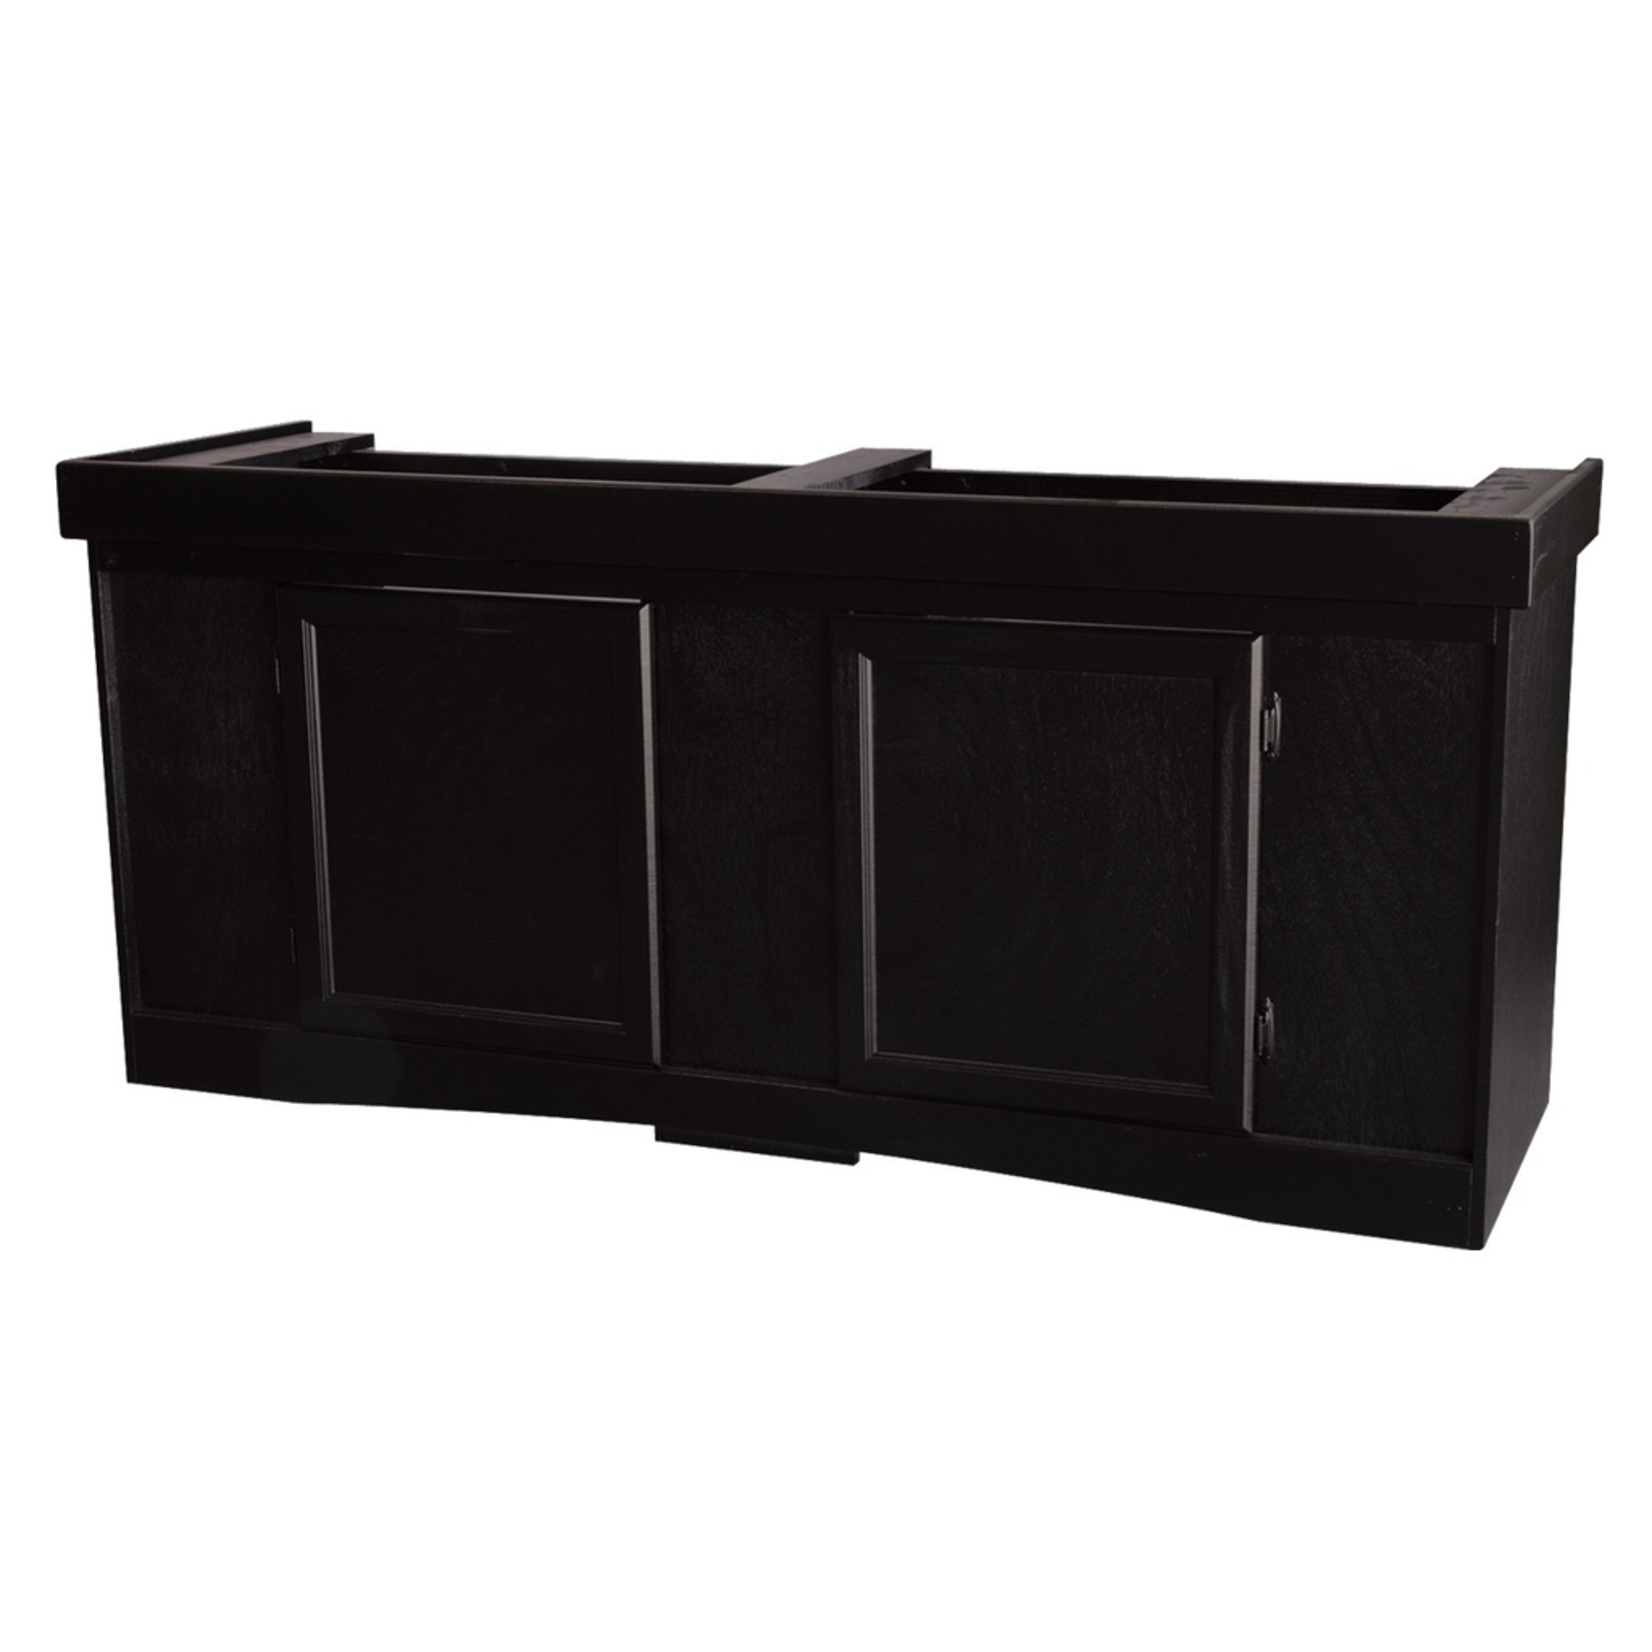 SEAPORA (W) Monarch Cabinet Stand - Black - 60" x 18